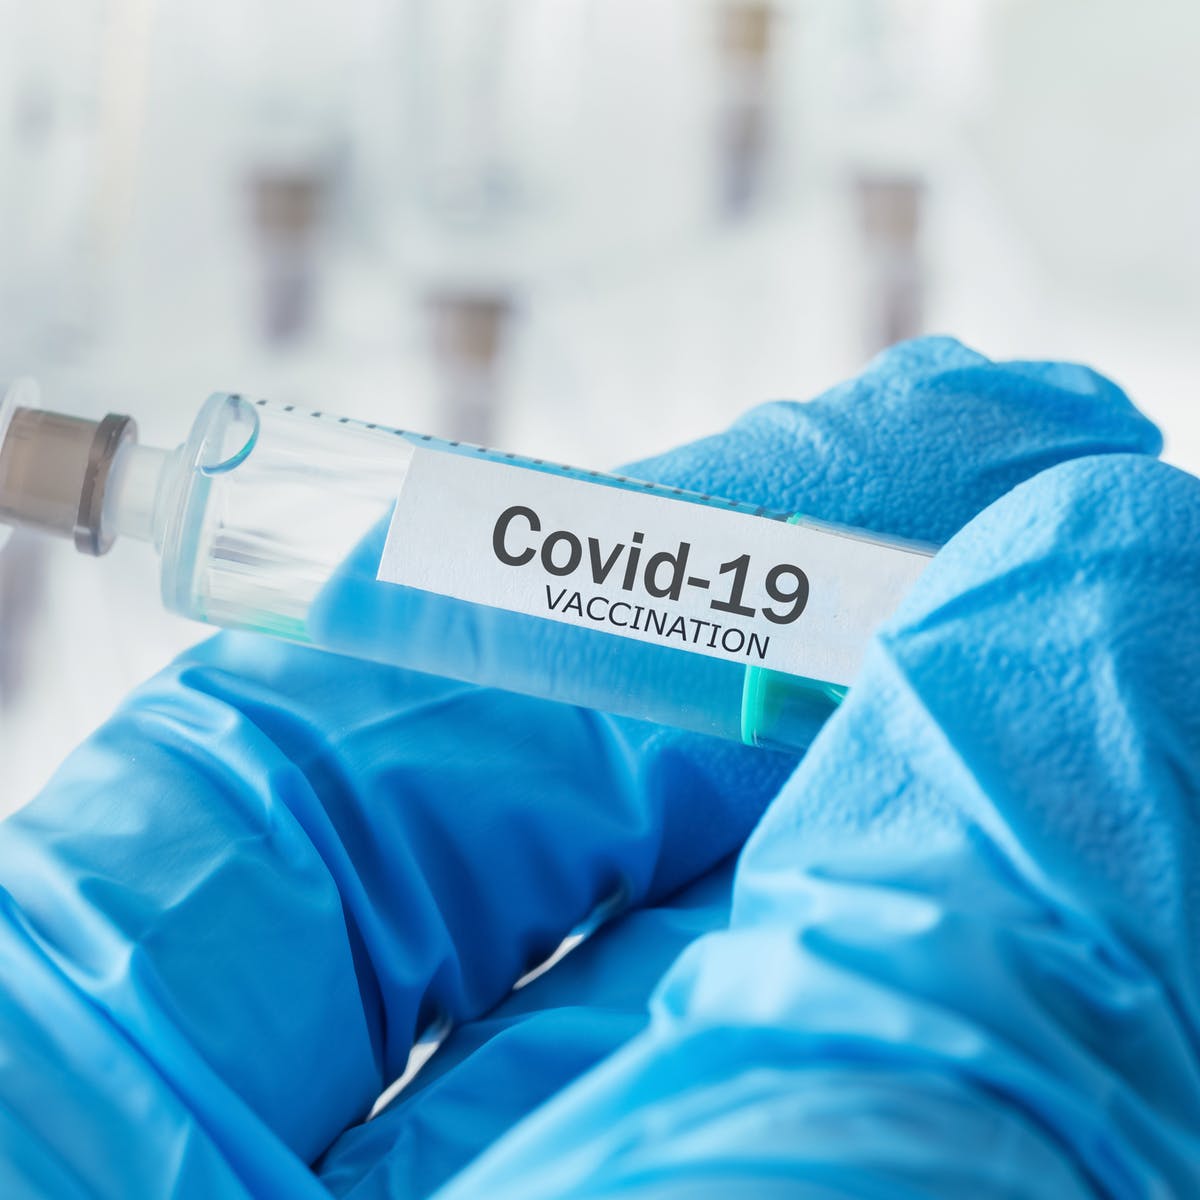 KOVİD-19’a karşı geliştirilen aşı ve ilaçlar